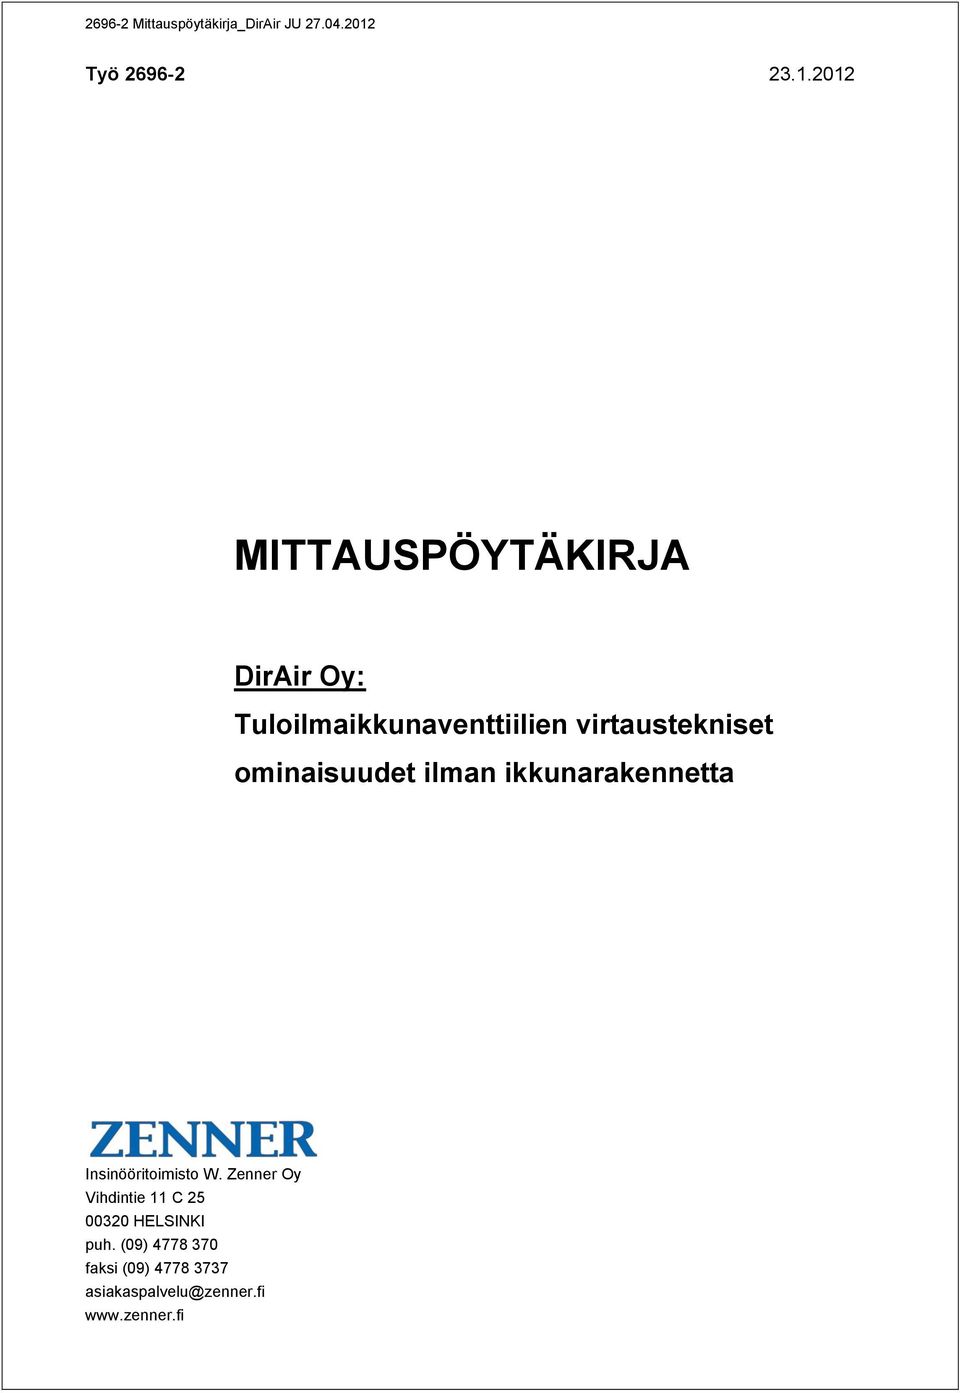 2012 MITTAUSPÖYTÄKIRJA DirAir Oy: Tuloilmaikkunaventtiilien virtaustekniset